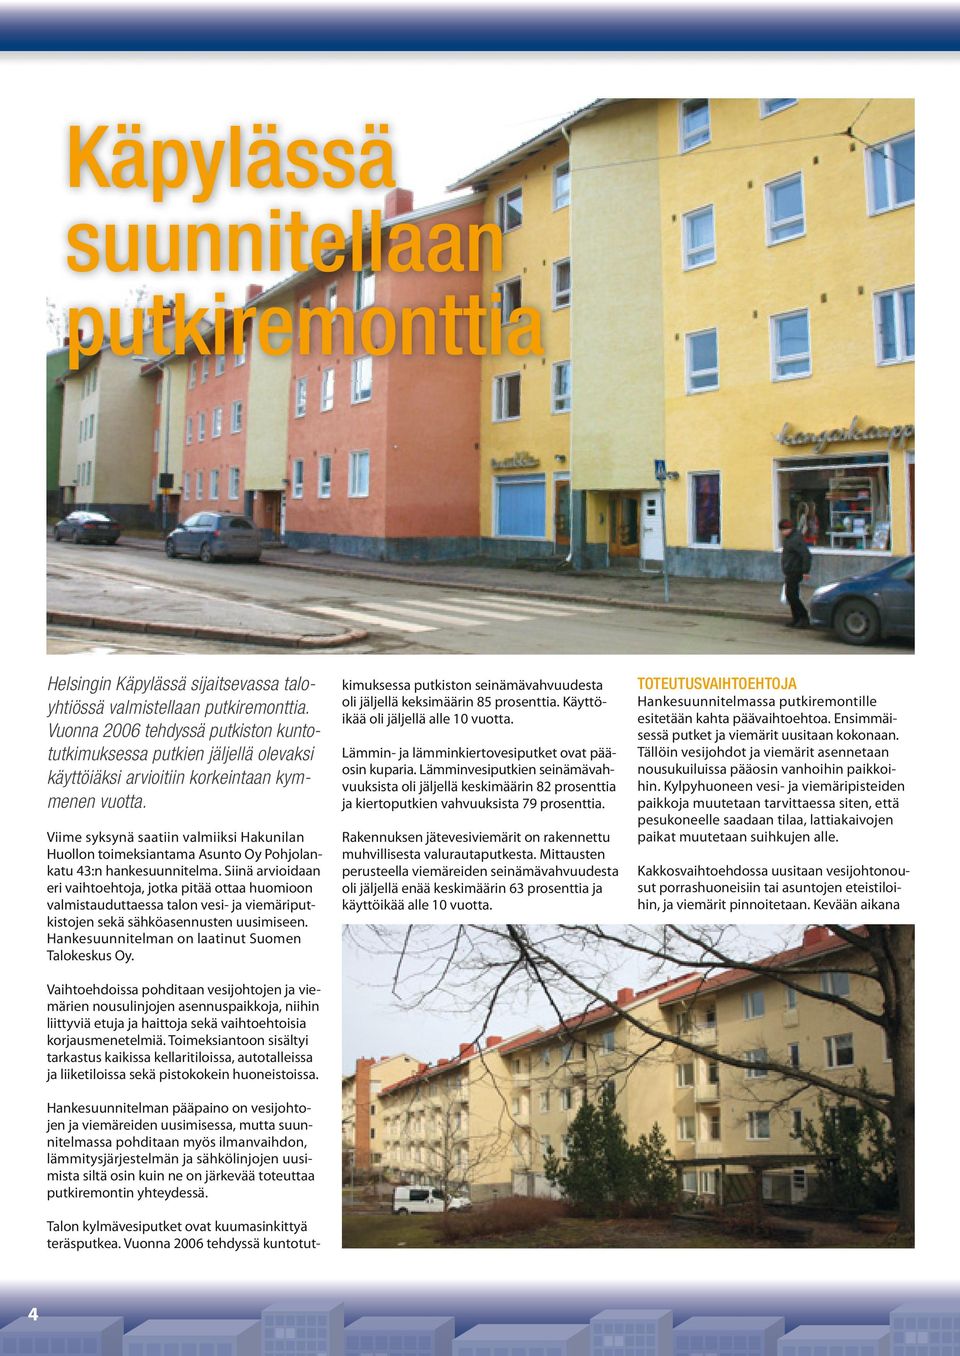 Viime syksynä saatiin valmiiksi Hakunilan Huollon toimeksiantama Asunto Oy Pohjolankatu 43:n hankesuunnitelma.